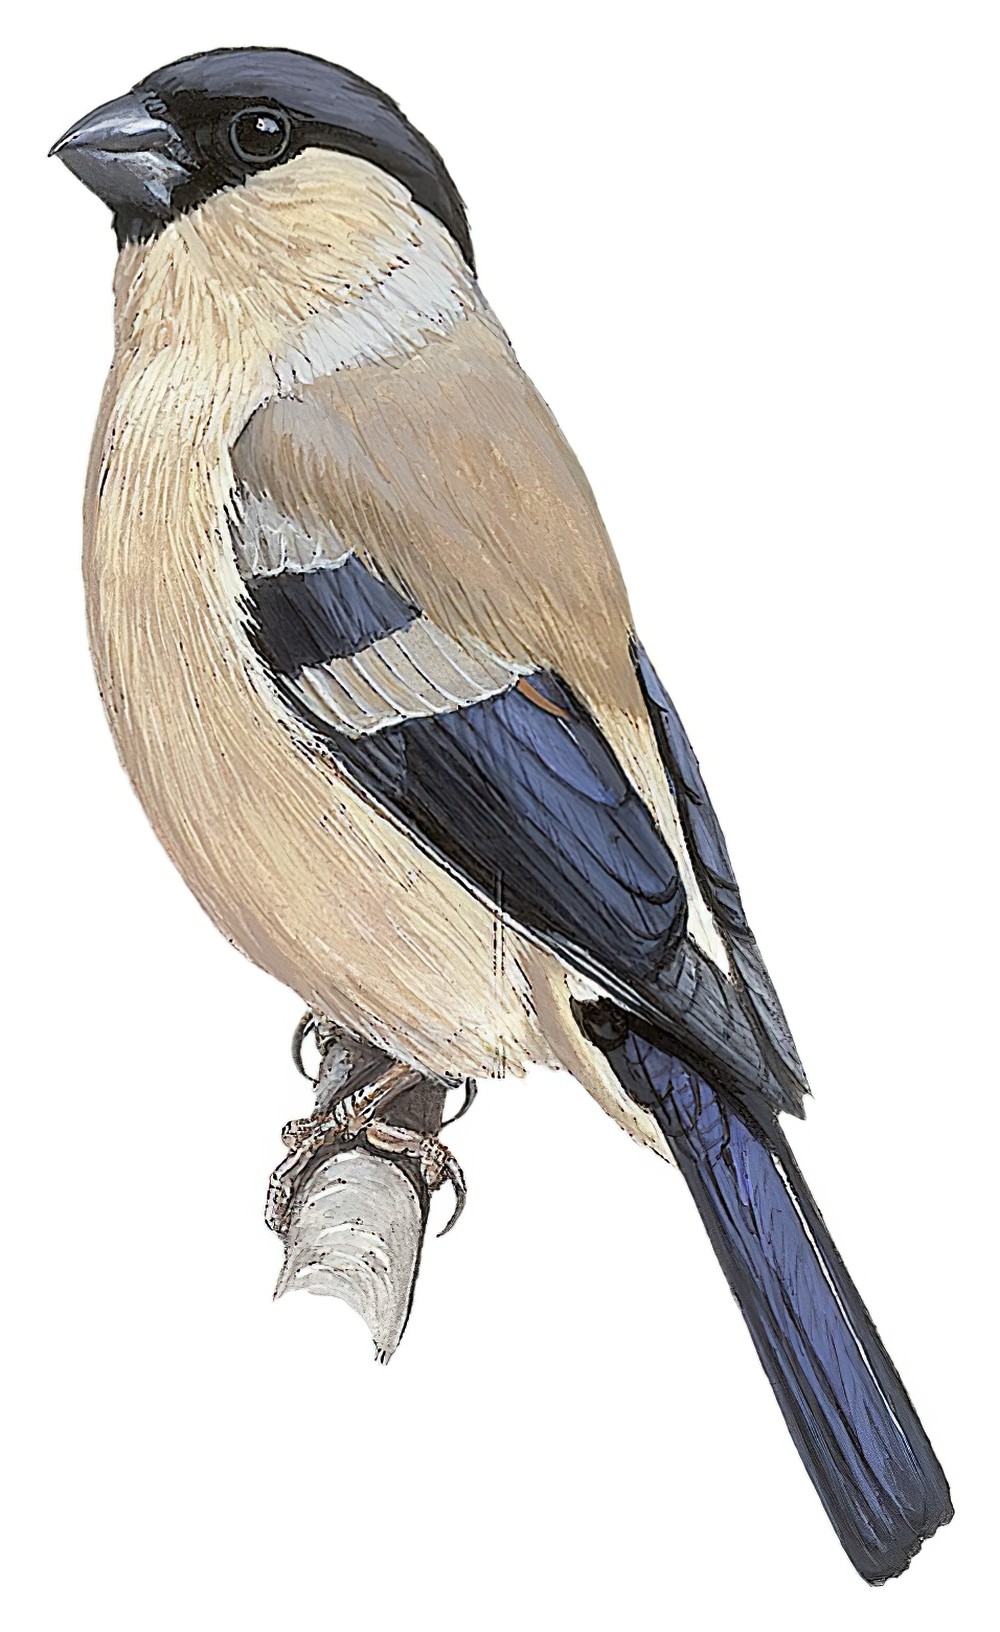 Azores Bullfinch / Pyrrhula murina